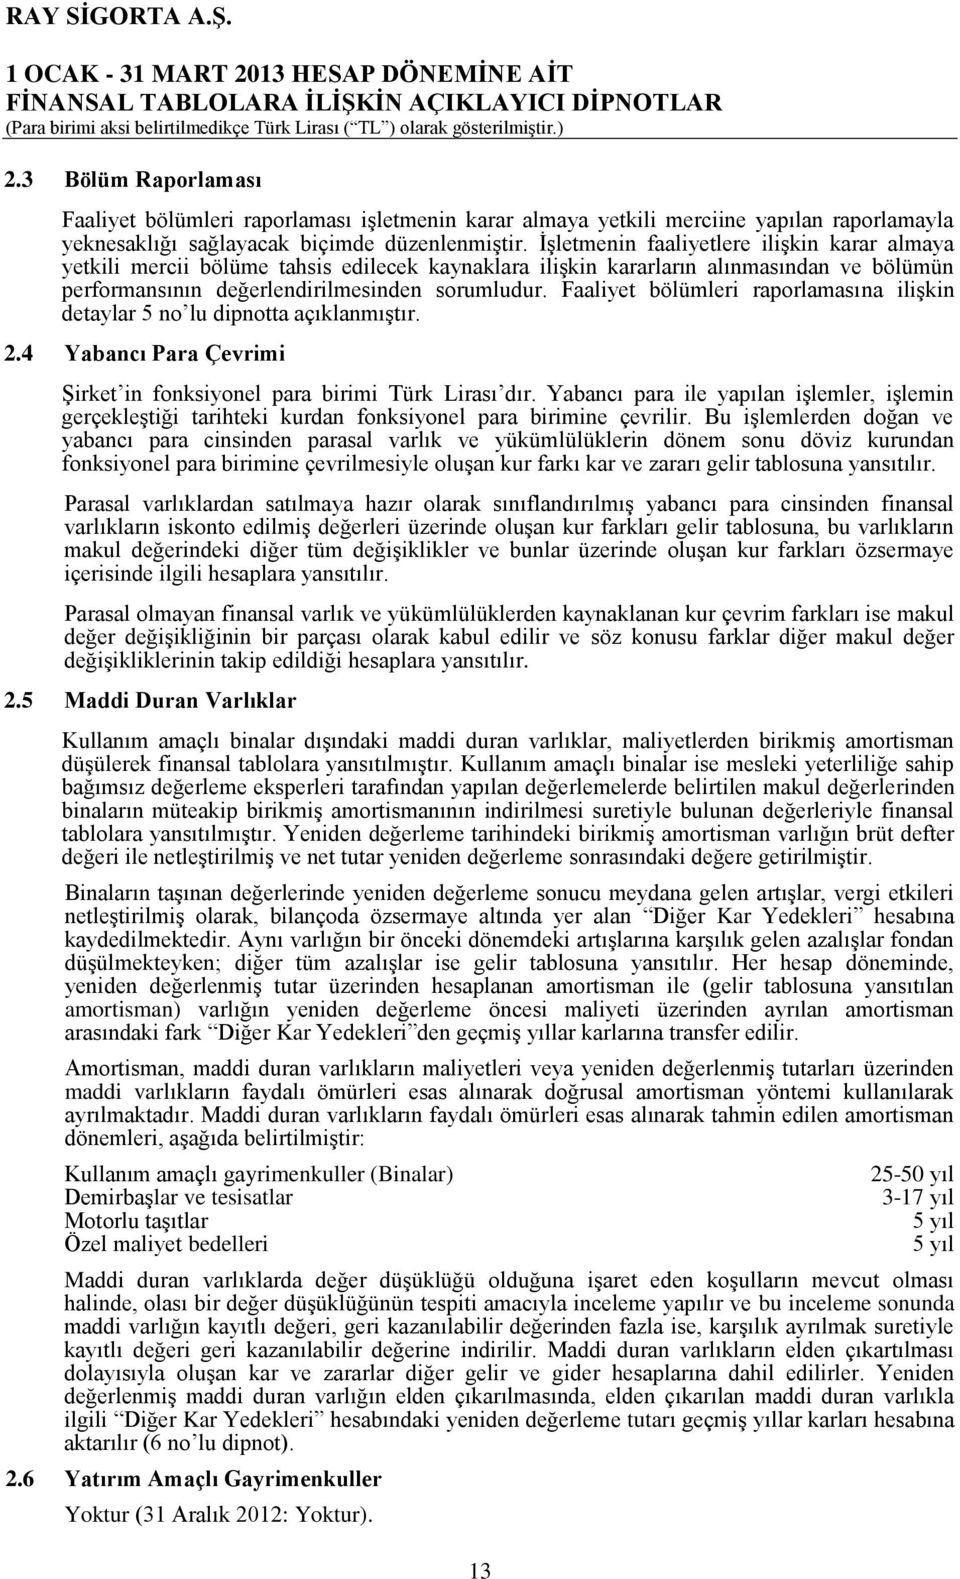 Faaliyet bölümleri raporlamasına ilişkin detaylar 5 no lu dipnotta açıklanmıştır. 2.4 Yabancı Para Çevrimi Şirket in fonksiyonel para birimi Türk Lirası dır.